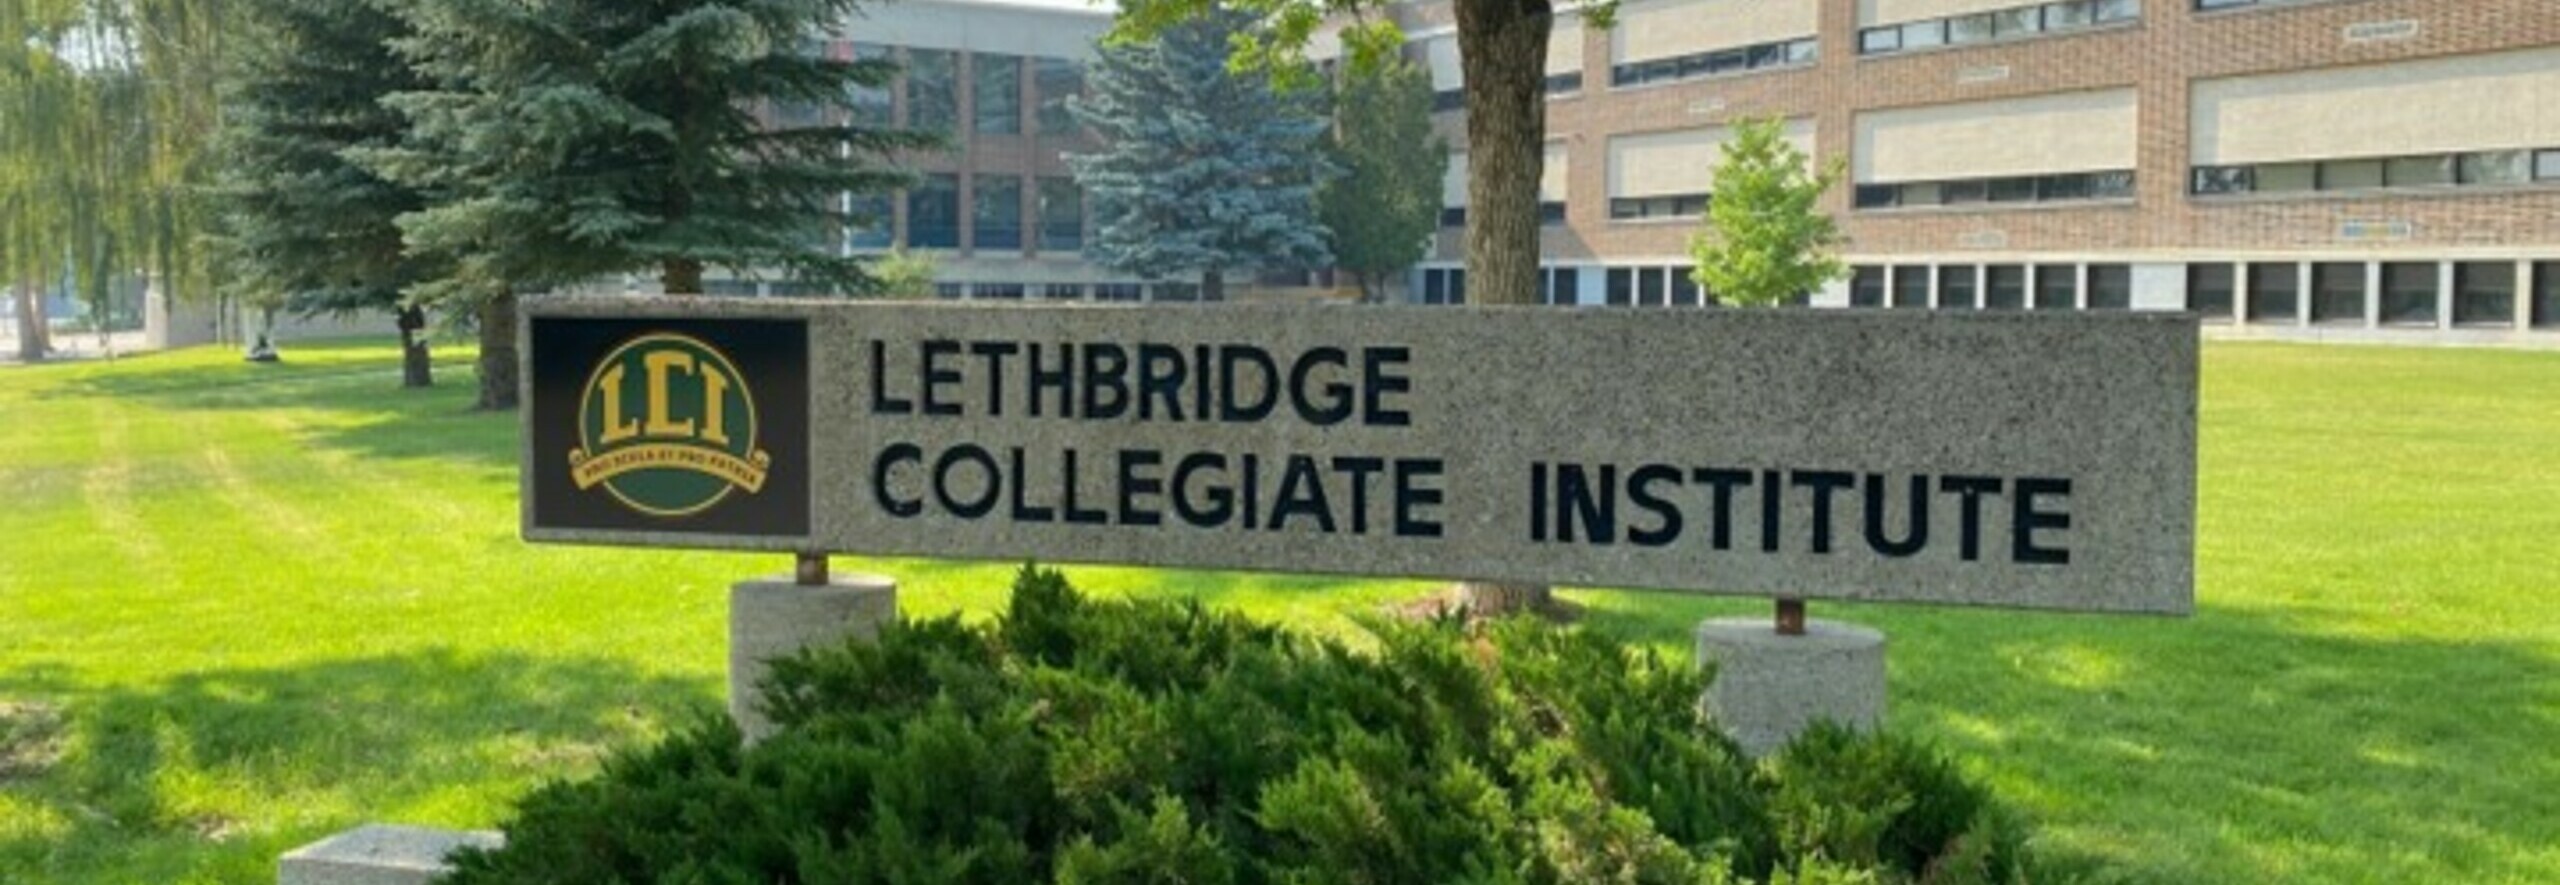 Lethbridge Collegiate Institute Banner Photo